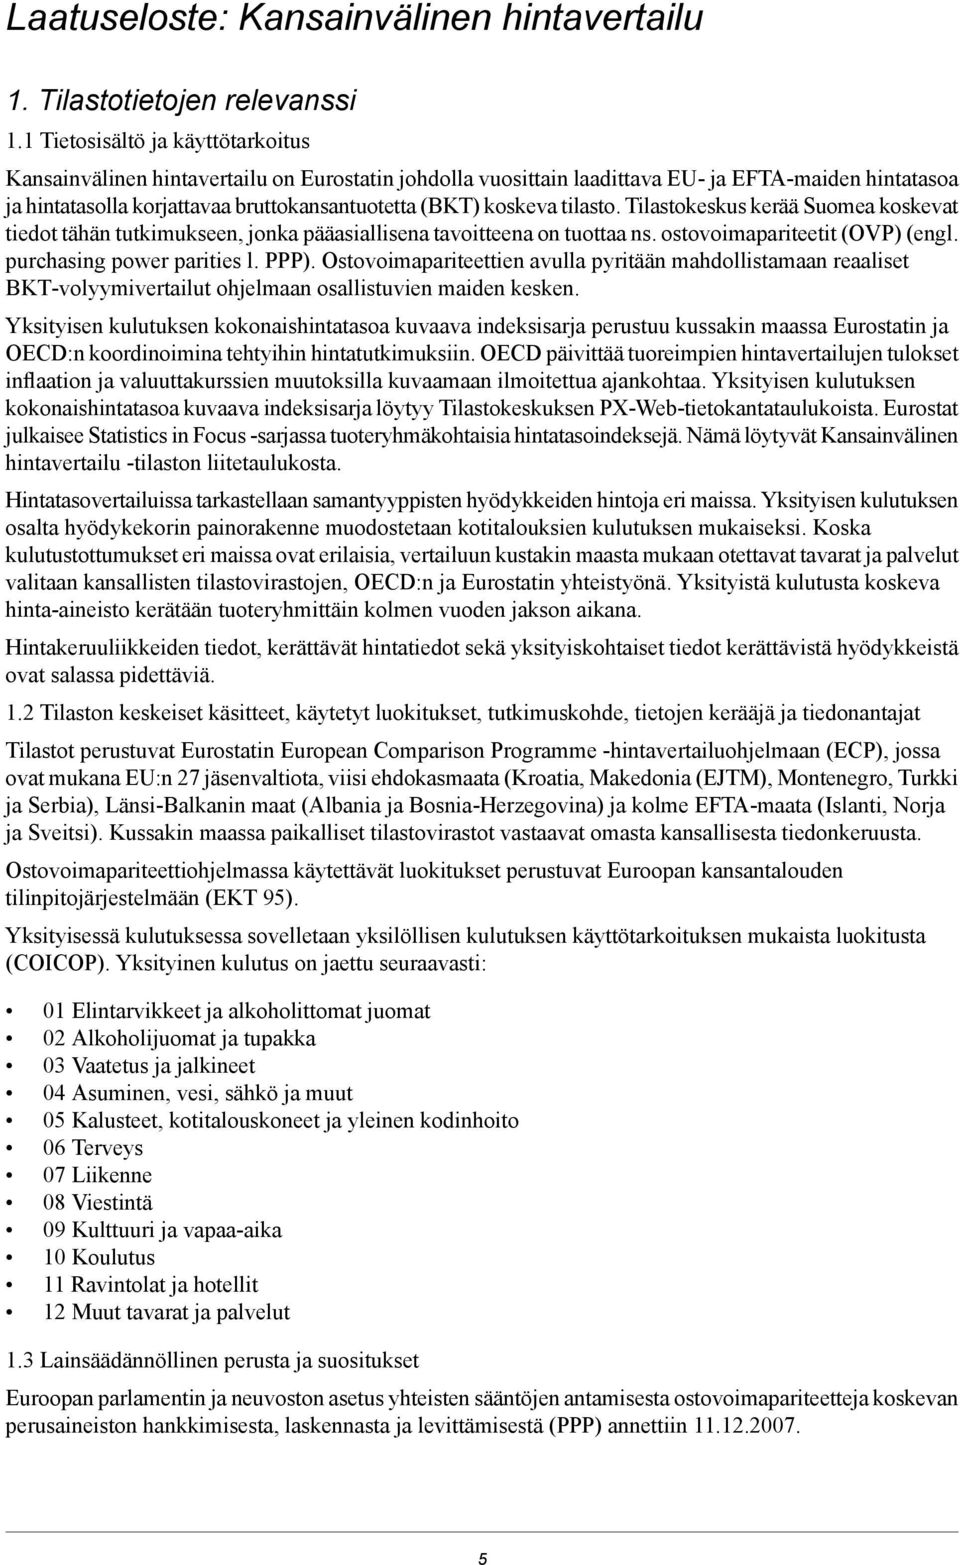 koskeva tilasto. Tilastokeskus kerää Suomea koskevat tiedot tähän tutkimukseen, jonka pääasiallisena tavoitteena on tuottaa ns. ostovoimapariteetit (OVP) (engl. purchasing power parities l. PPP).